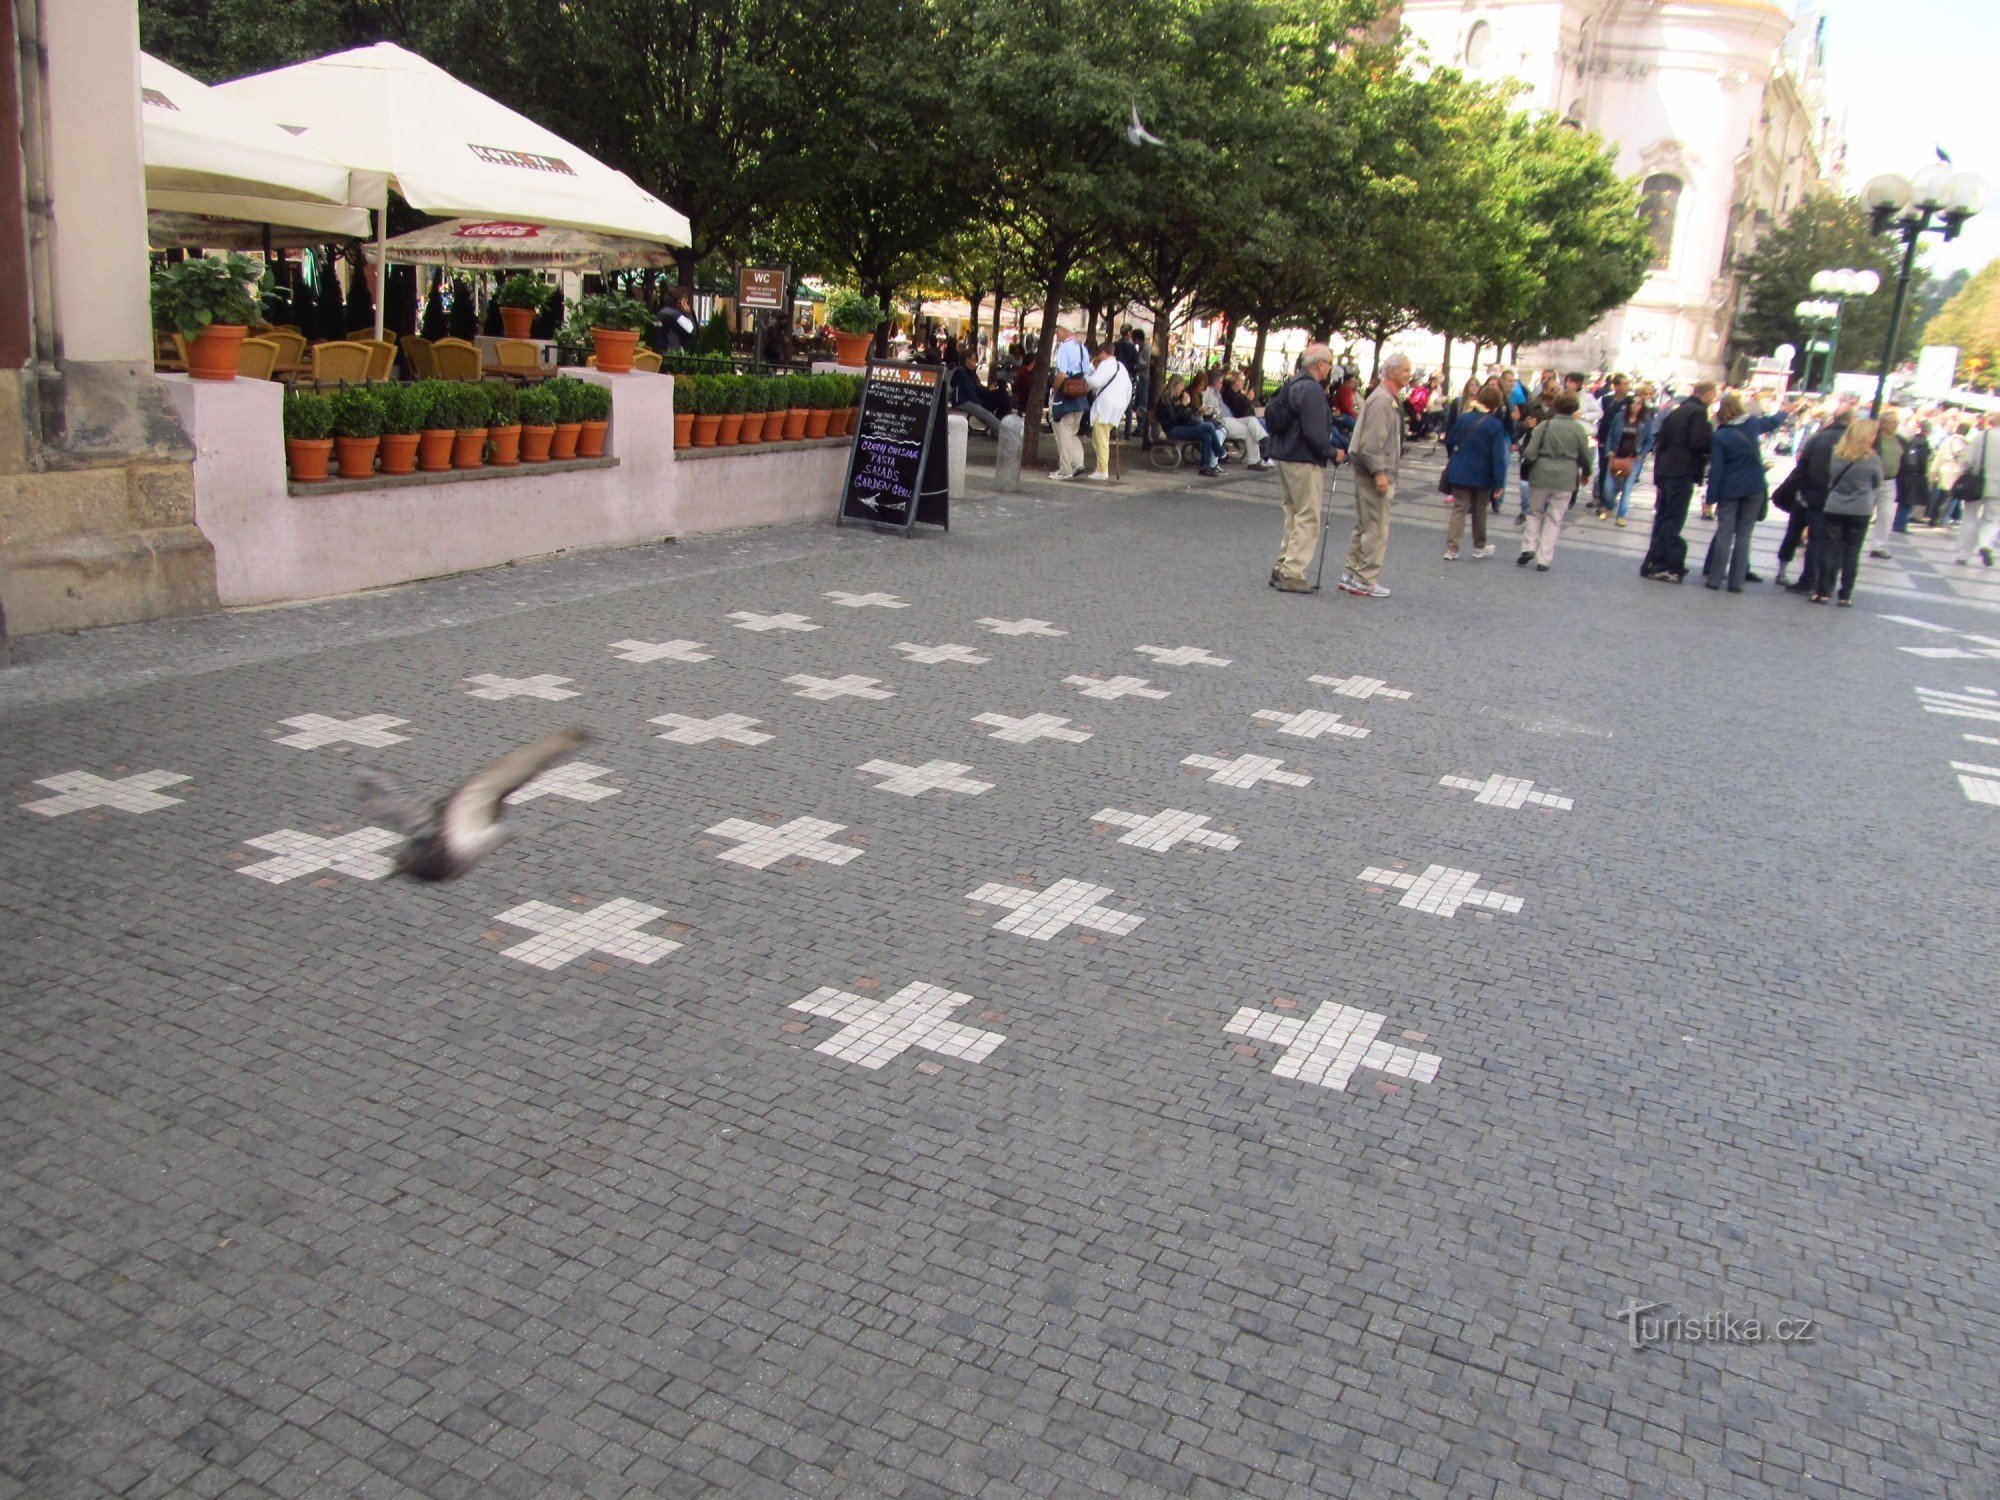 27 kruisen in de stoep bij het oude stadhuis in Praag als herinnering aan de executie van 27 Tsjechen